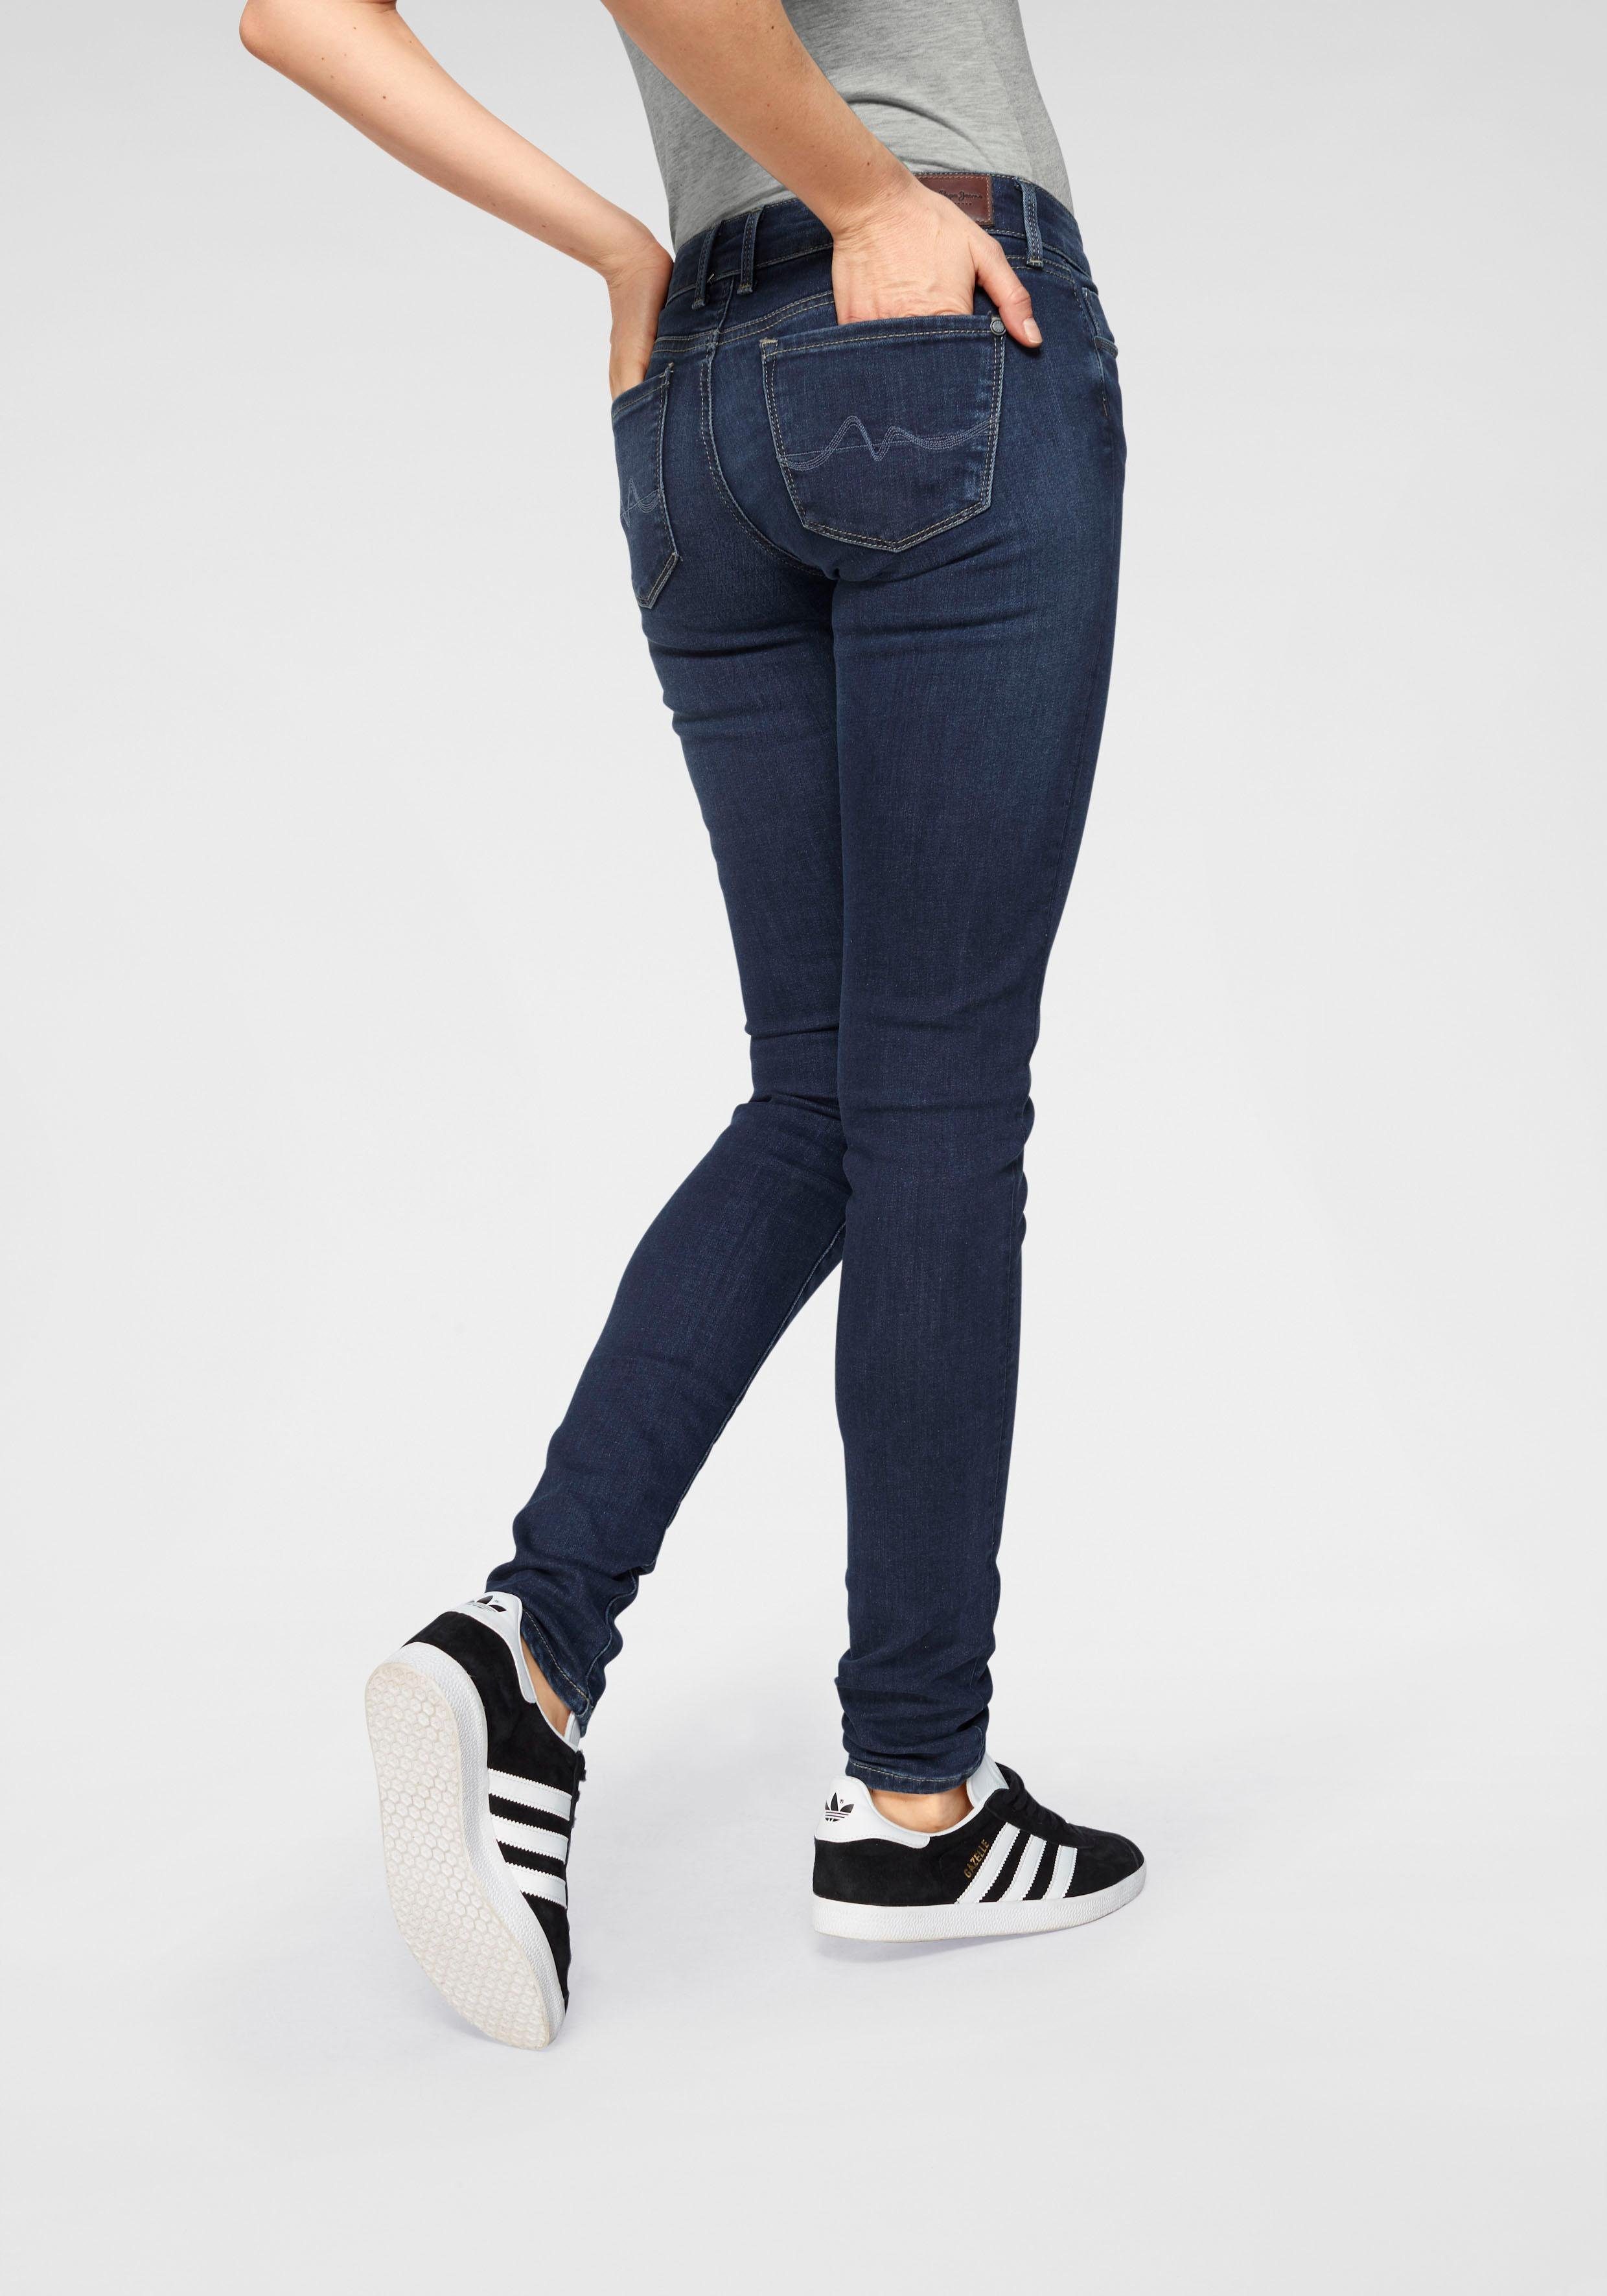 Pepe Jeans Skinny-fit-Jeans 1-Knopf Stretch-Anteil im Bund dark 5-Pocket-Stil H45 und SOHO worn used mit